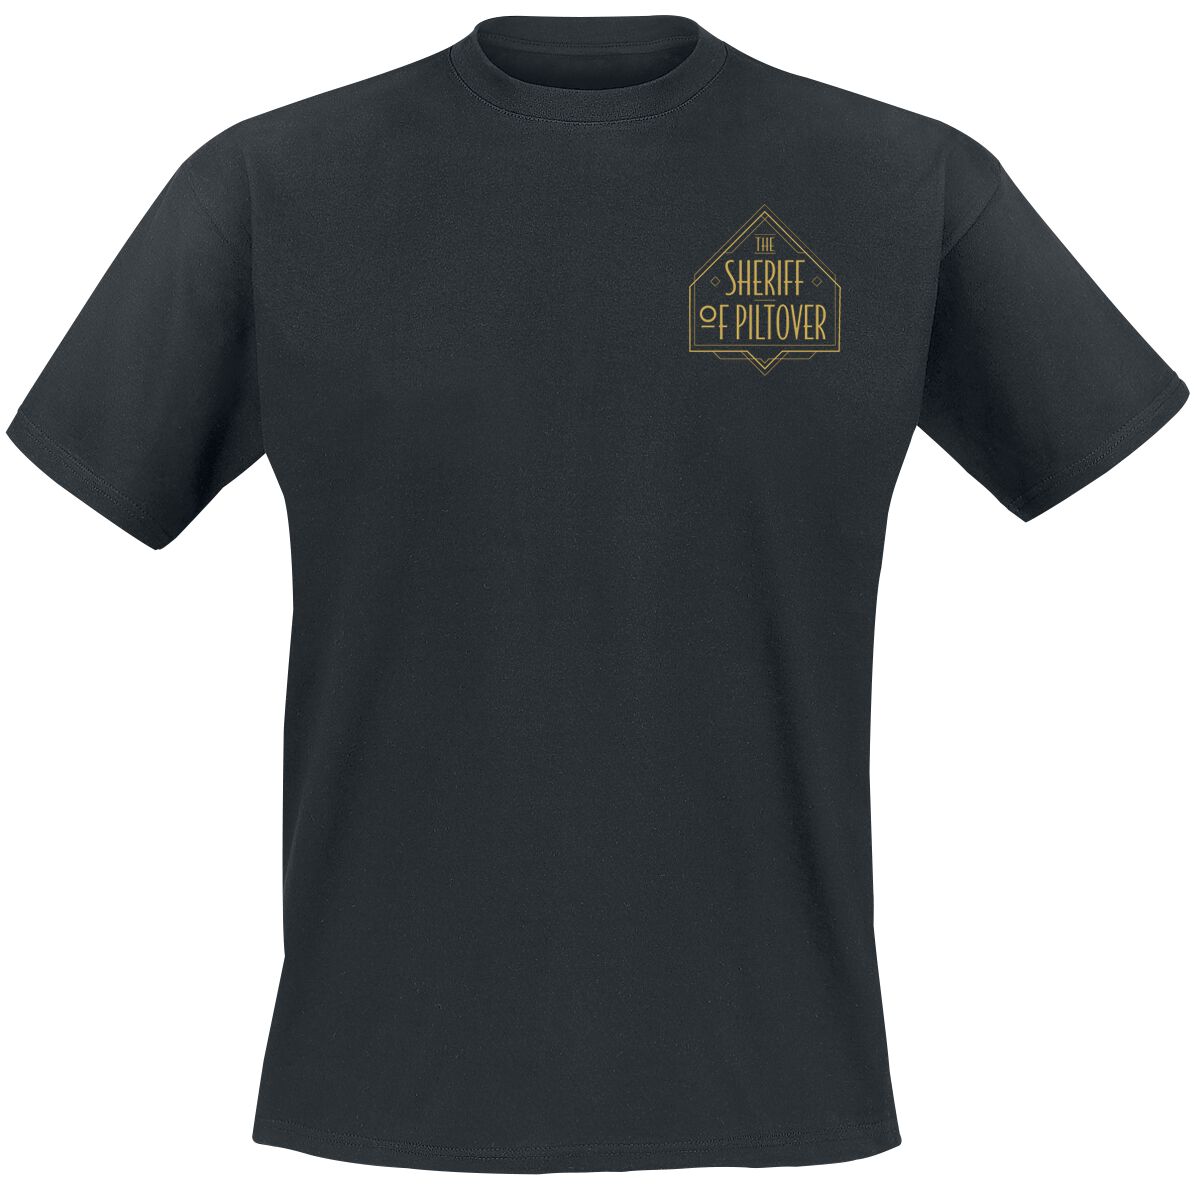 Arcane: League Of Legends - Gaming T-Shirt - Caitlyn - Piltover Sheriff - S bis L - für Männer - Größe M - schwarz  - EMP exklusives Merchandise! von League Of Legends